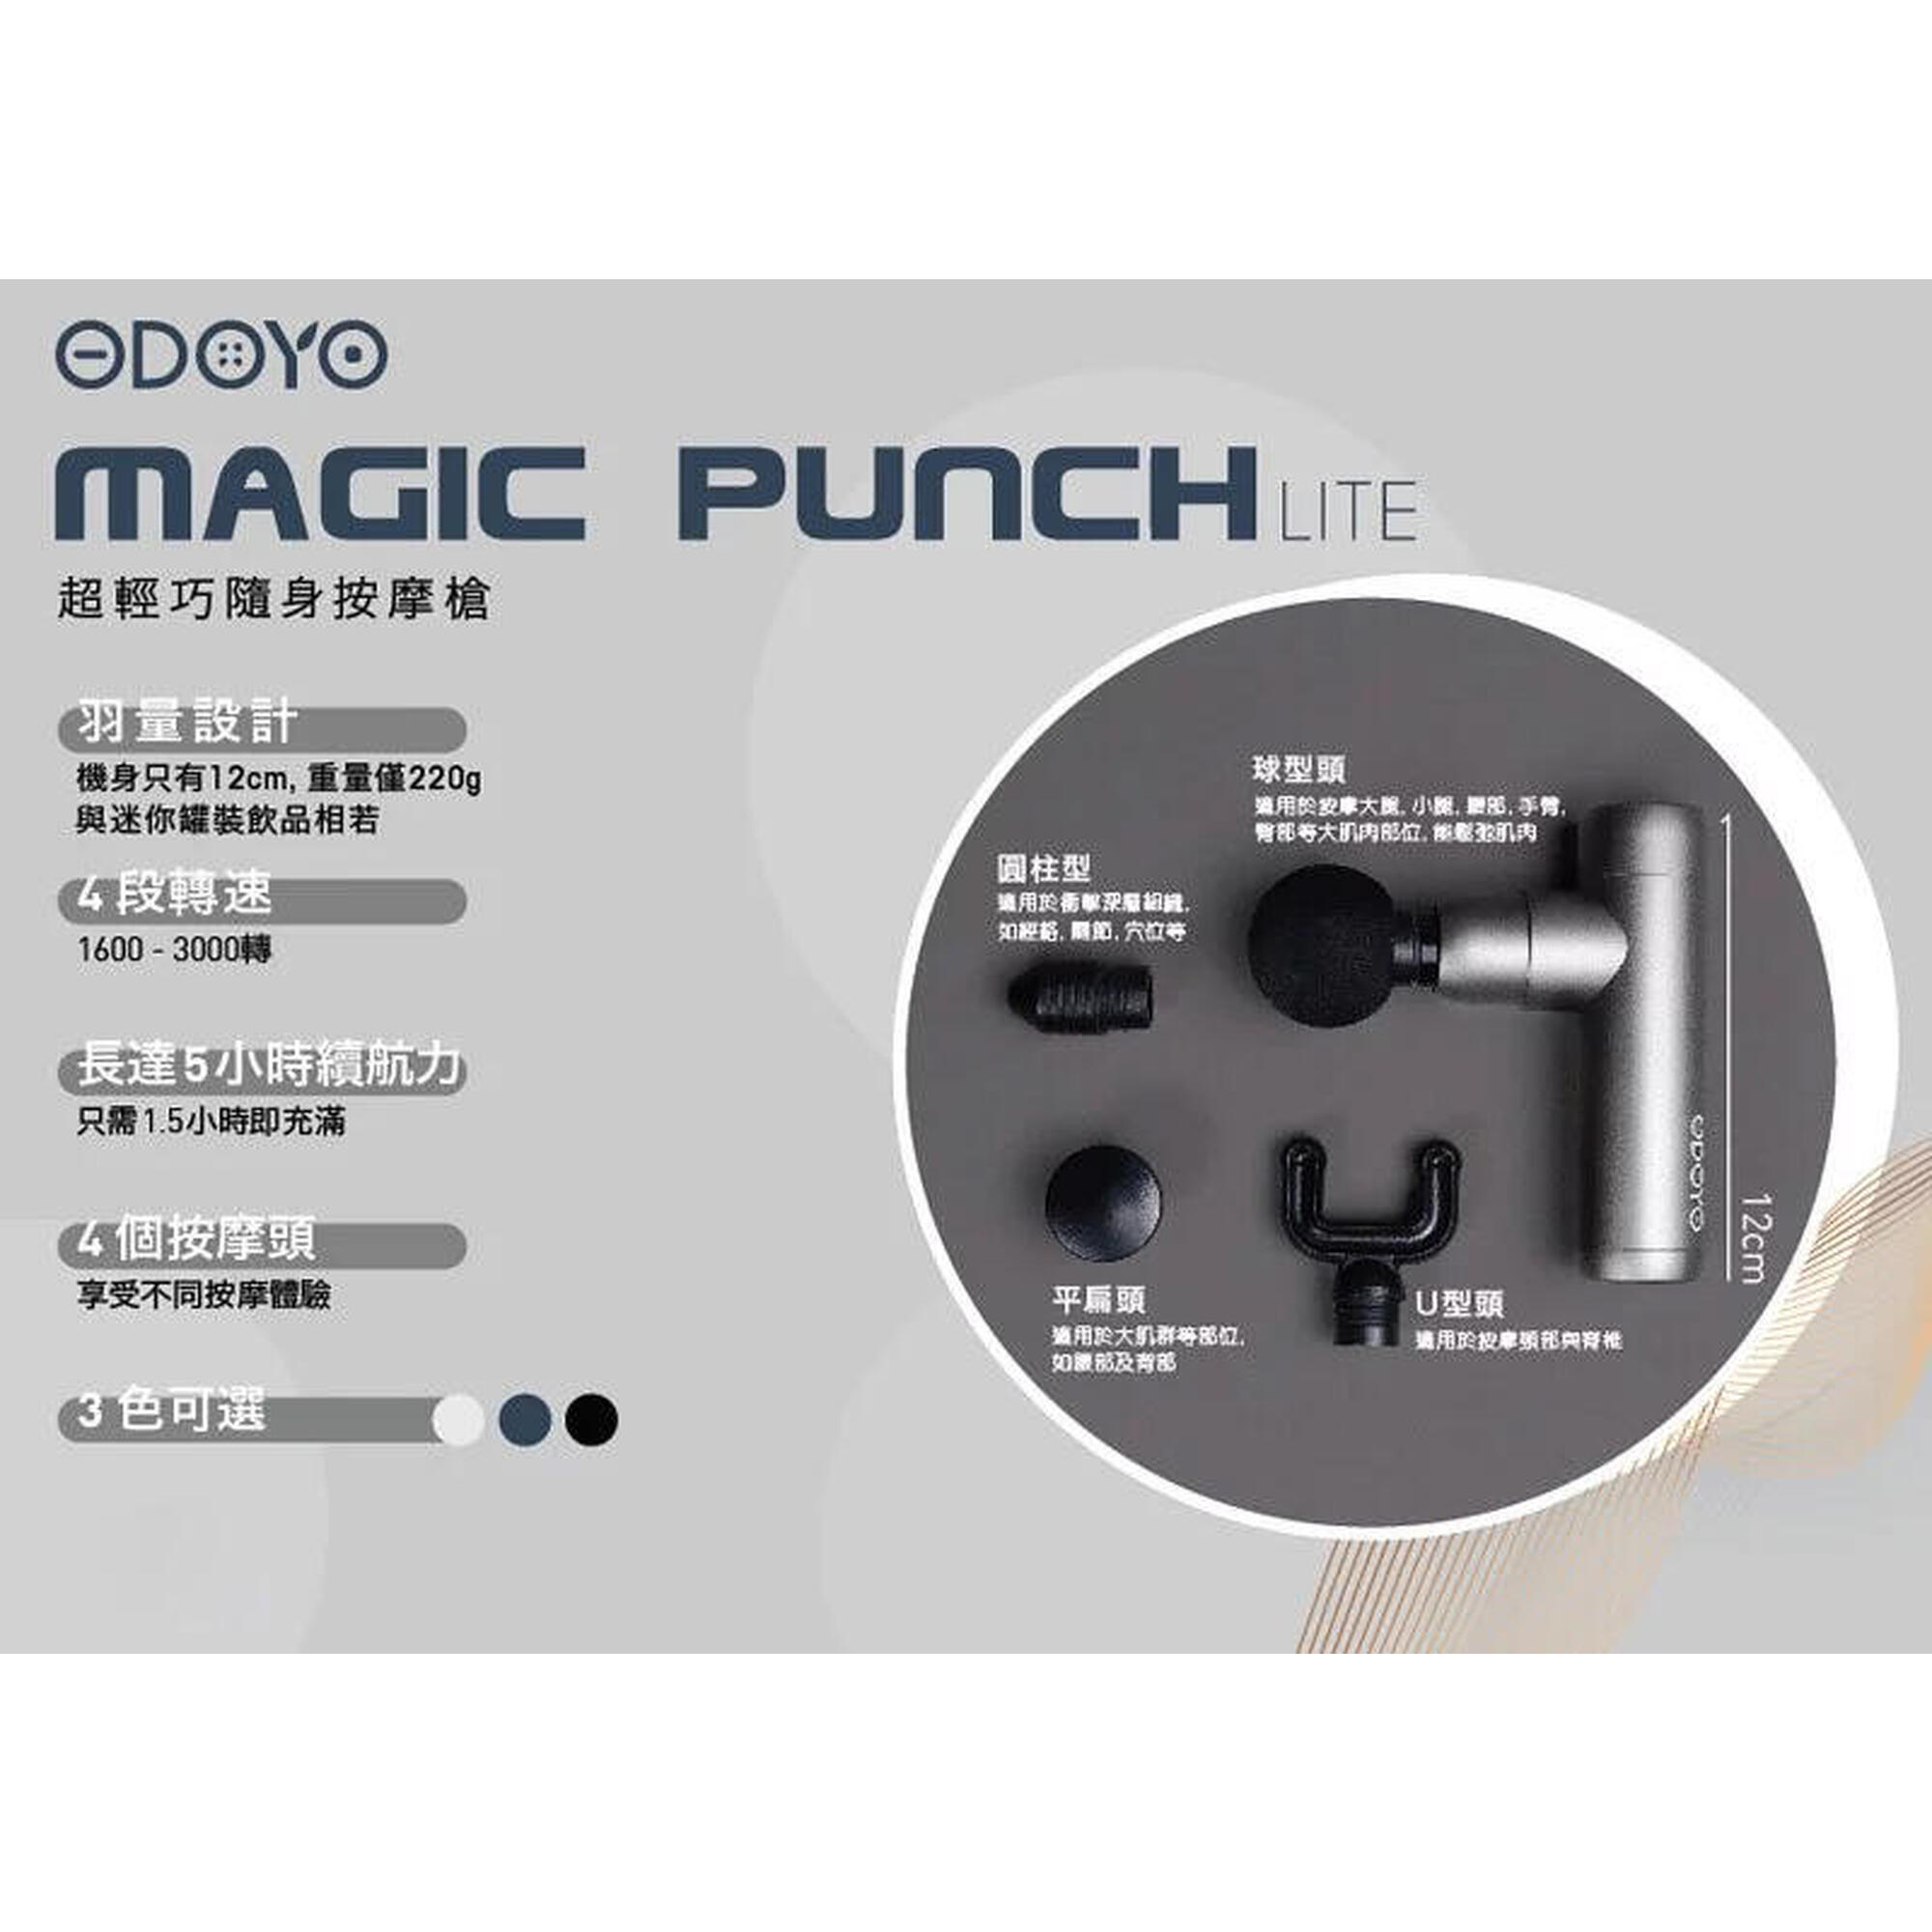 Magic Punch Lite Ultra-light Portable Massage Gun - Grey